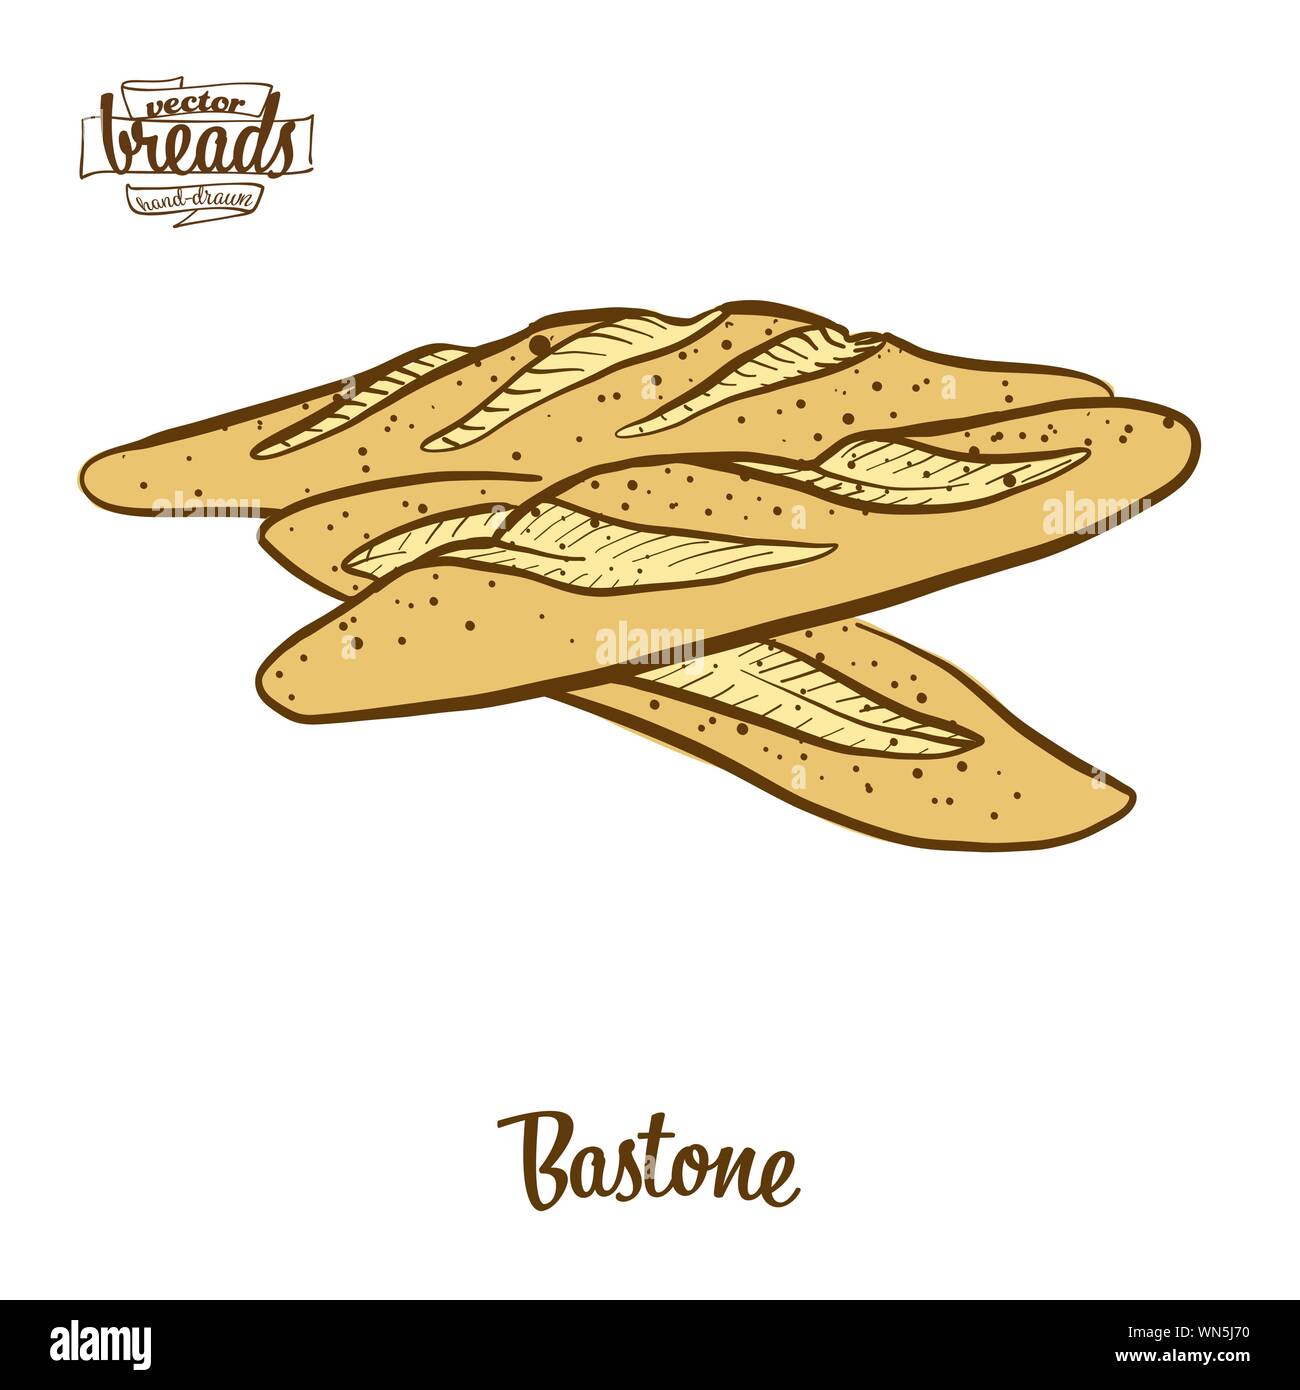 Dessin couleur de pain Bastone. Vector illustration of yeast bread food, généralement connu en Italie. Pain de couleur des croquis. Illustration de Vecteur